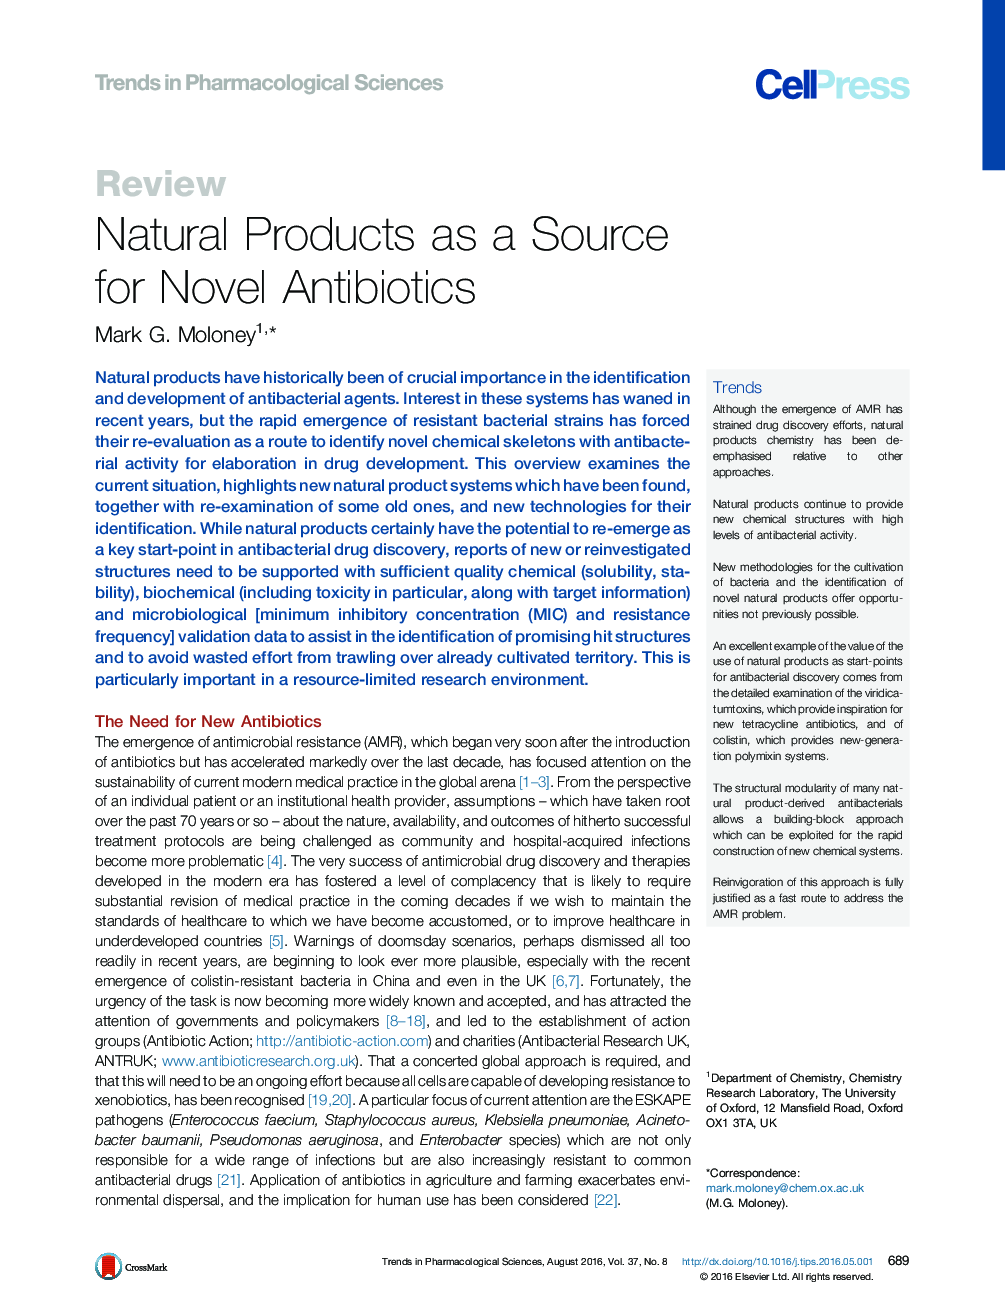 محصولات طبیعی به عنوان منبع آنتی بیوتیک های جدید 